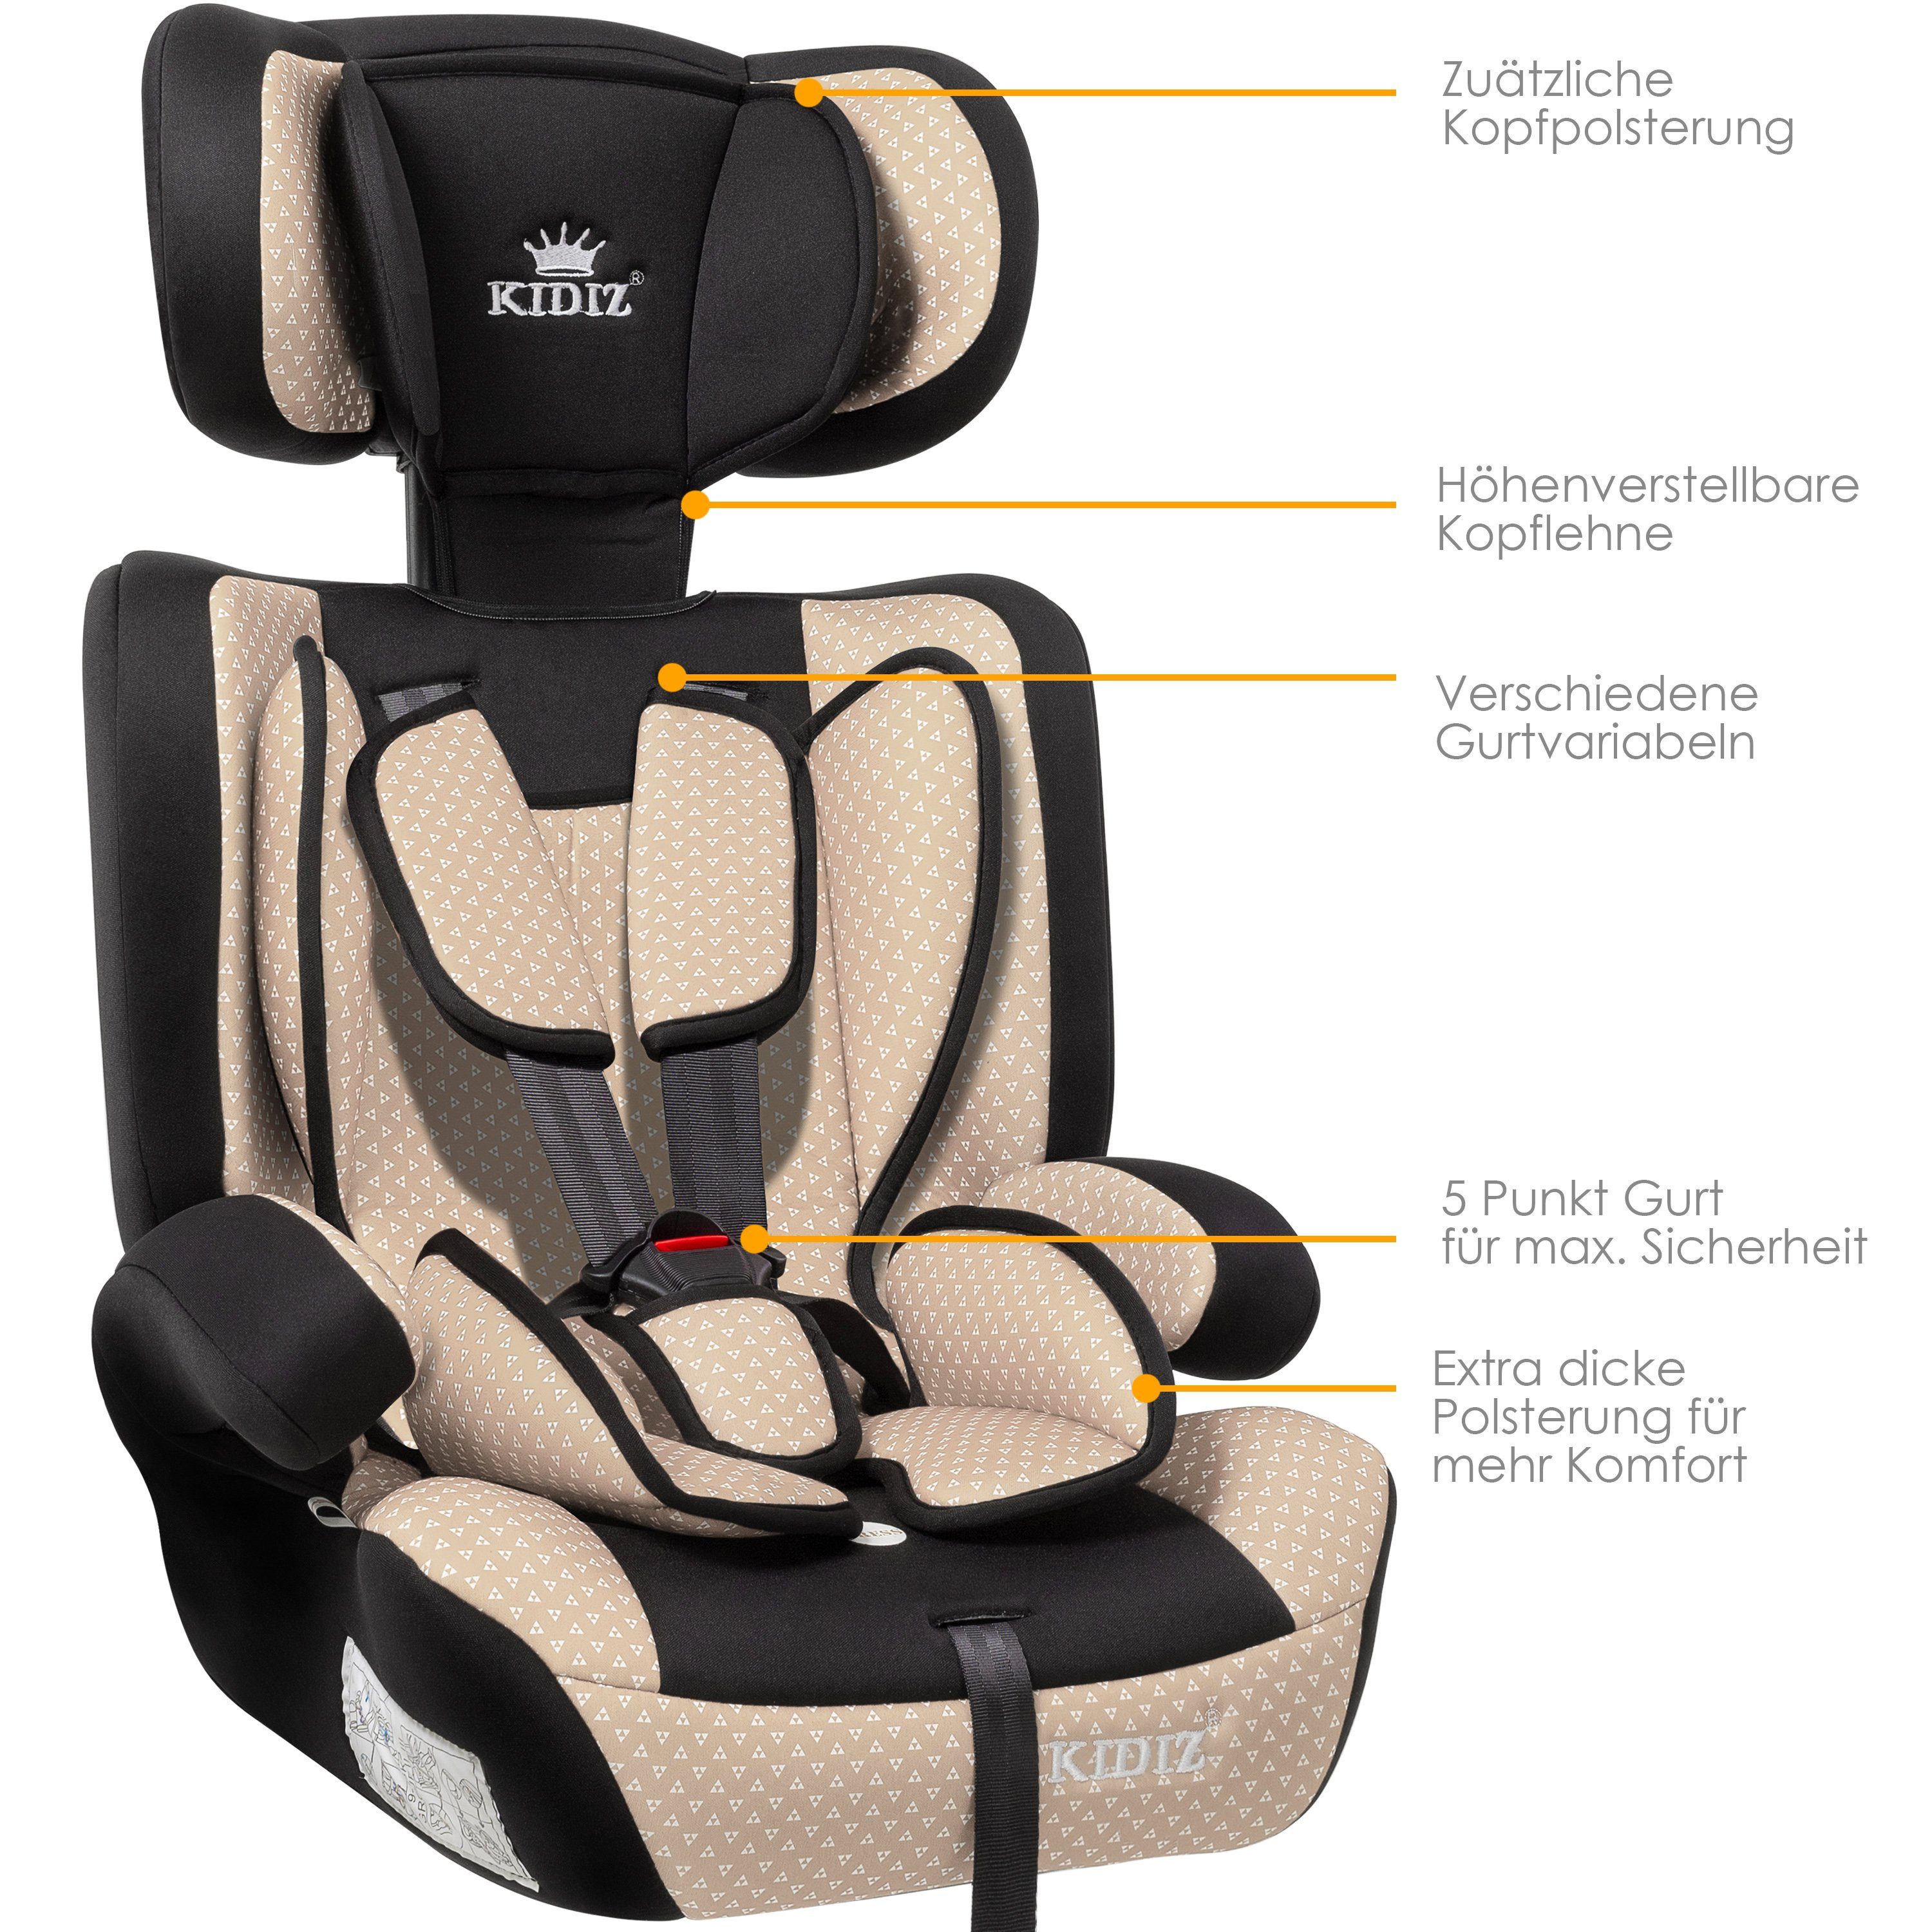 KIDIZ Autokindersitz, Kinderautositz Kindersitz Autositz Sitzschale 9 kg -  36 kg 1-12 Jahre Gruppe 1/2/3 universal zugelassen nach ECE R44/04 6  verschiedenen Farben